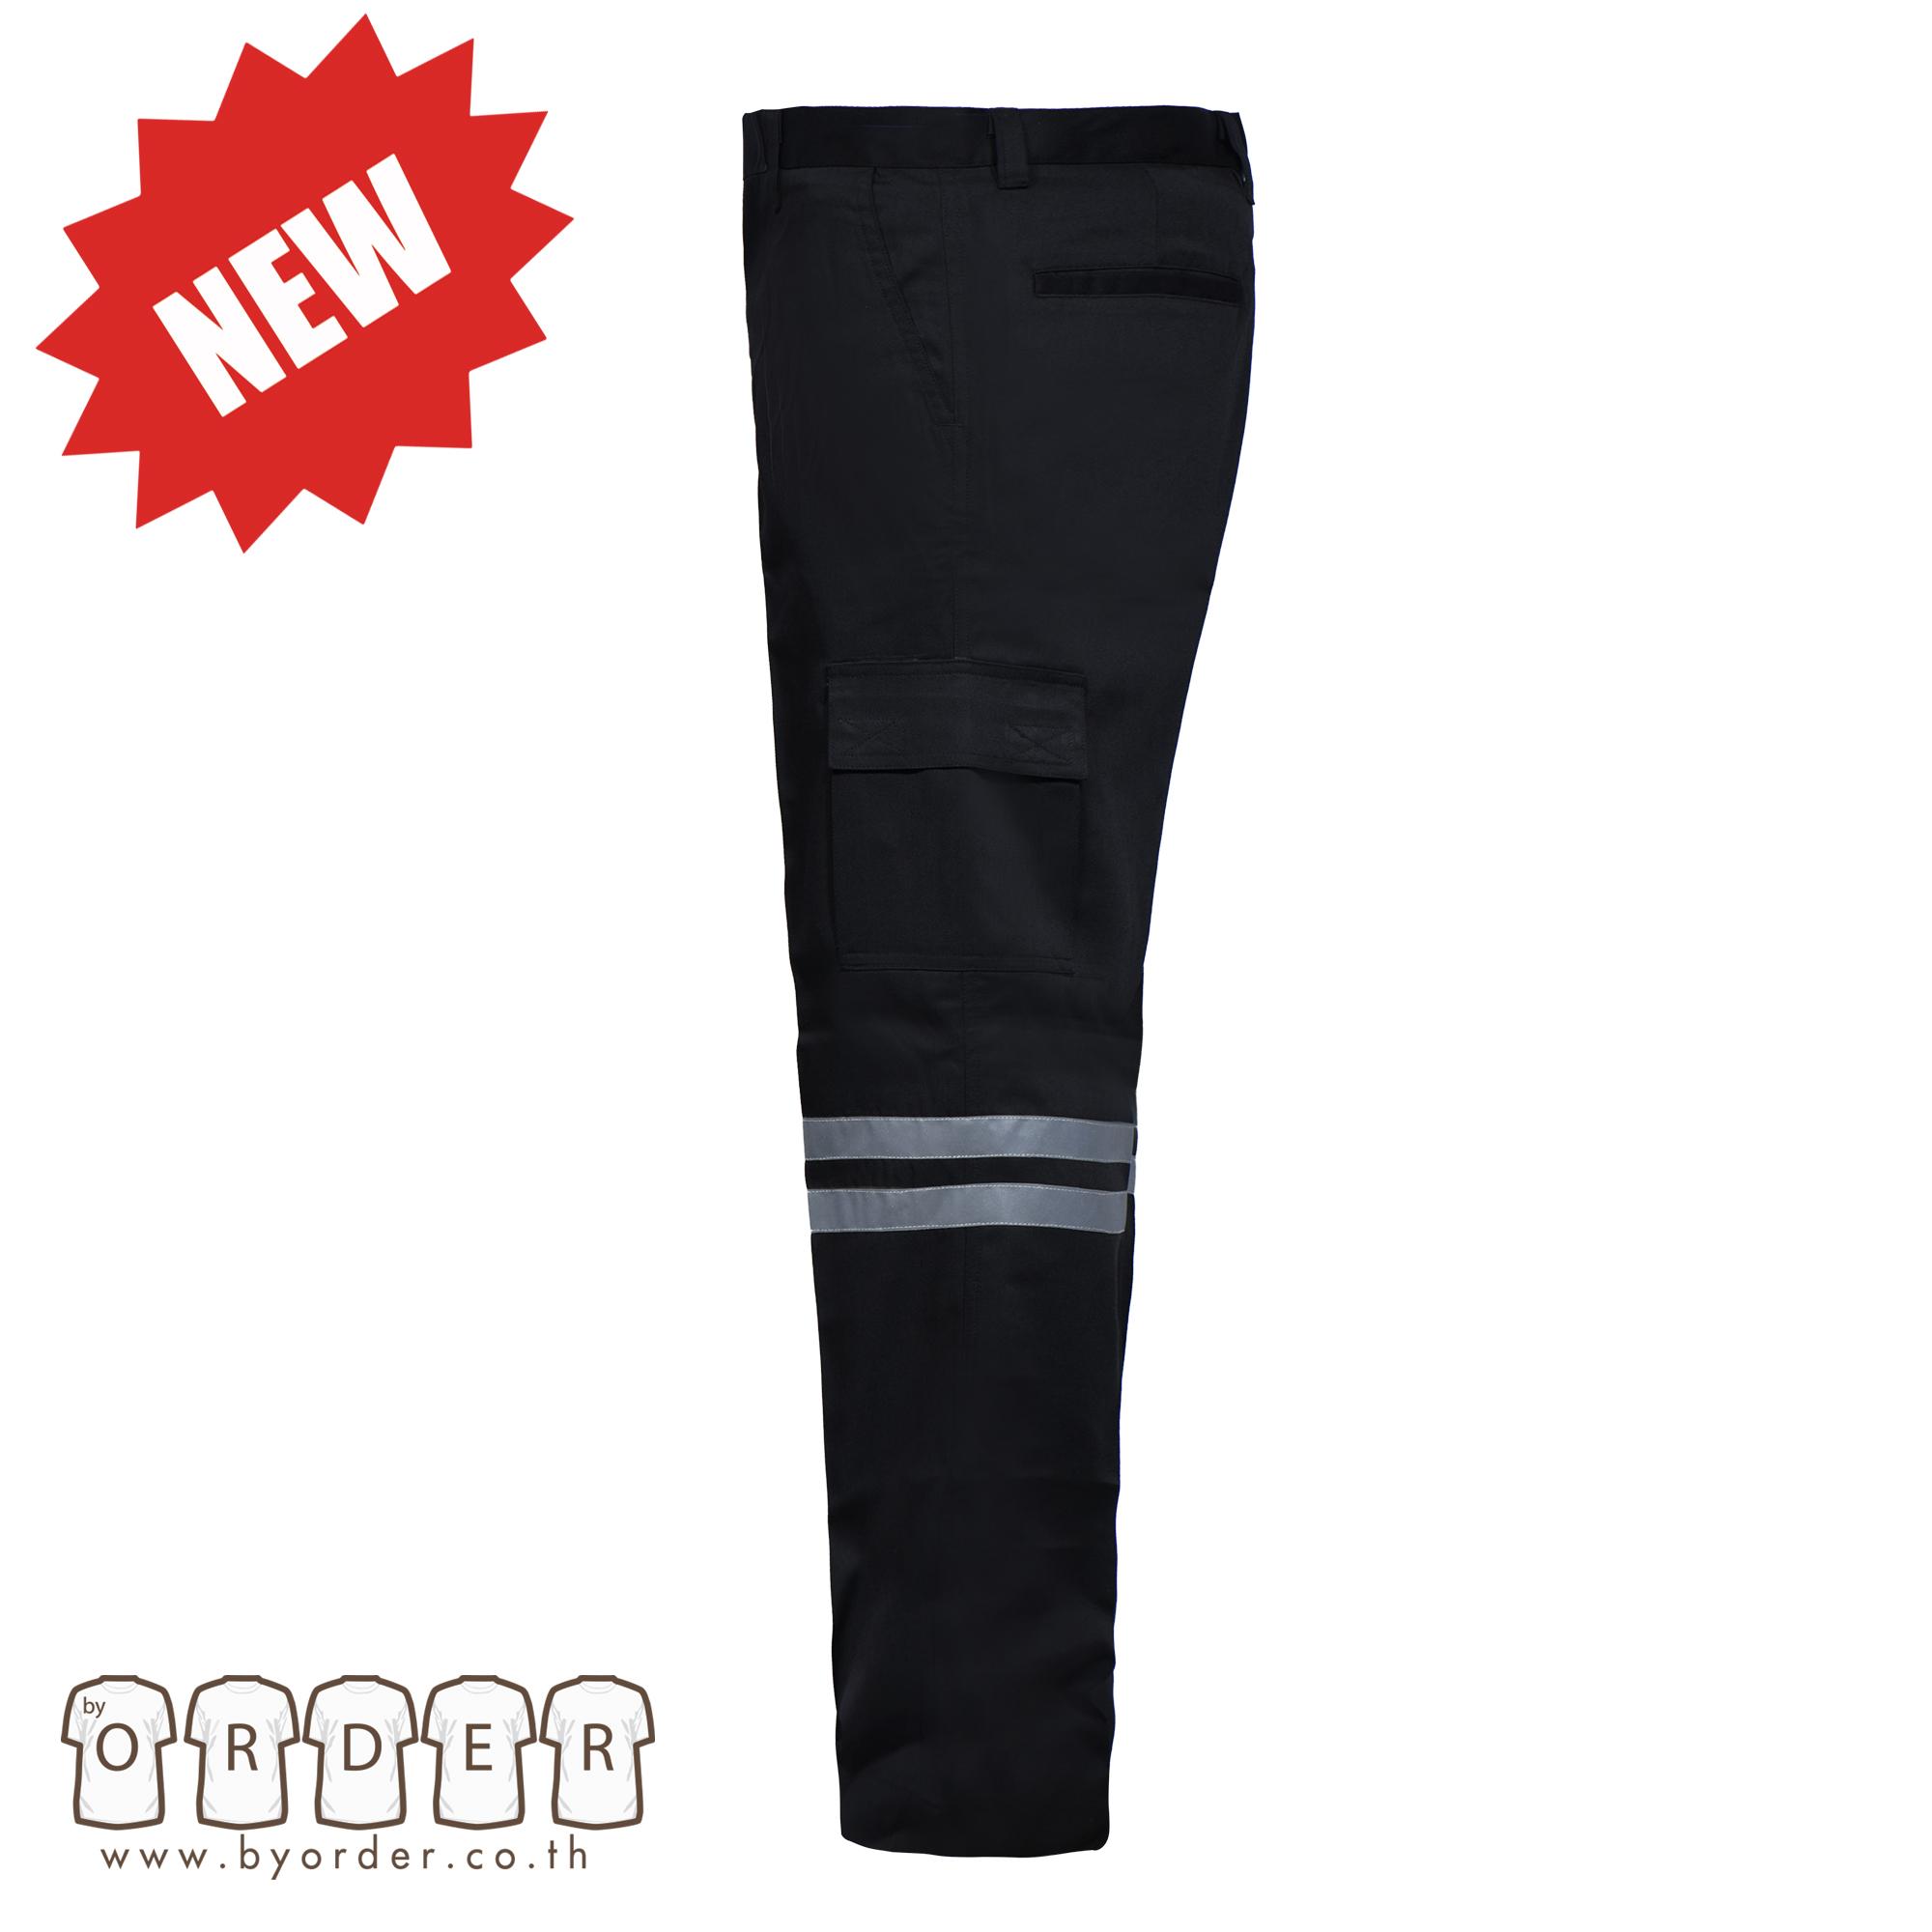 กางเกงคาร์โก้ V01 สีกรมท่า สีดำ ติดเทปสะท้อนแสง 2 แถบ กางเกงหลายกระเป๋า  กางเกงช่าง กางเกงทำงาน  สินค้าขายดีคุณภาพแบรนด์เนม ใช้ทน สี ดำ ขนาด เอว:34 สี ดำขนาด เอว:34